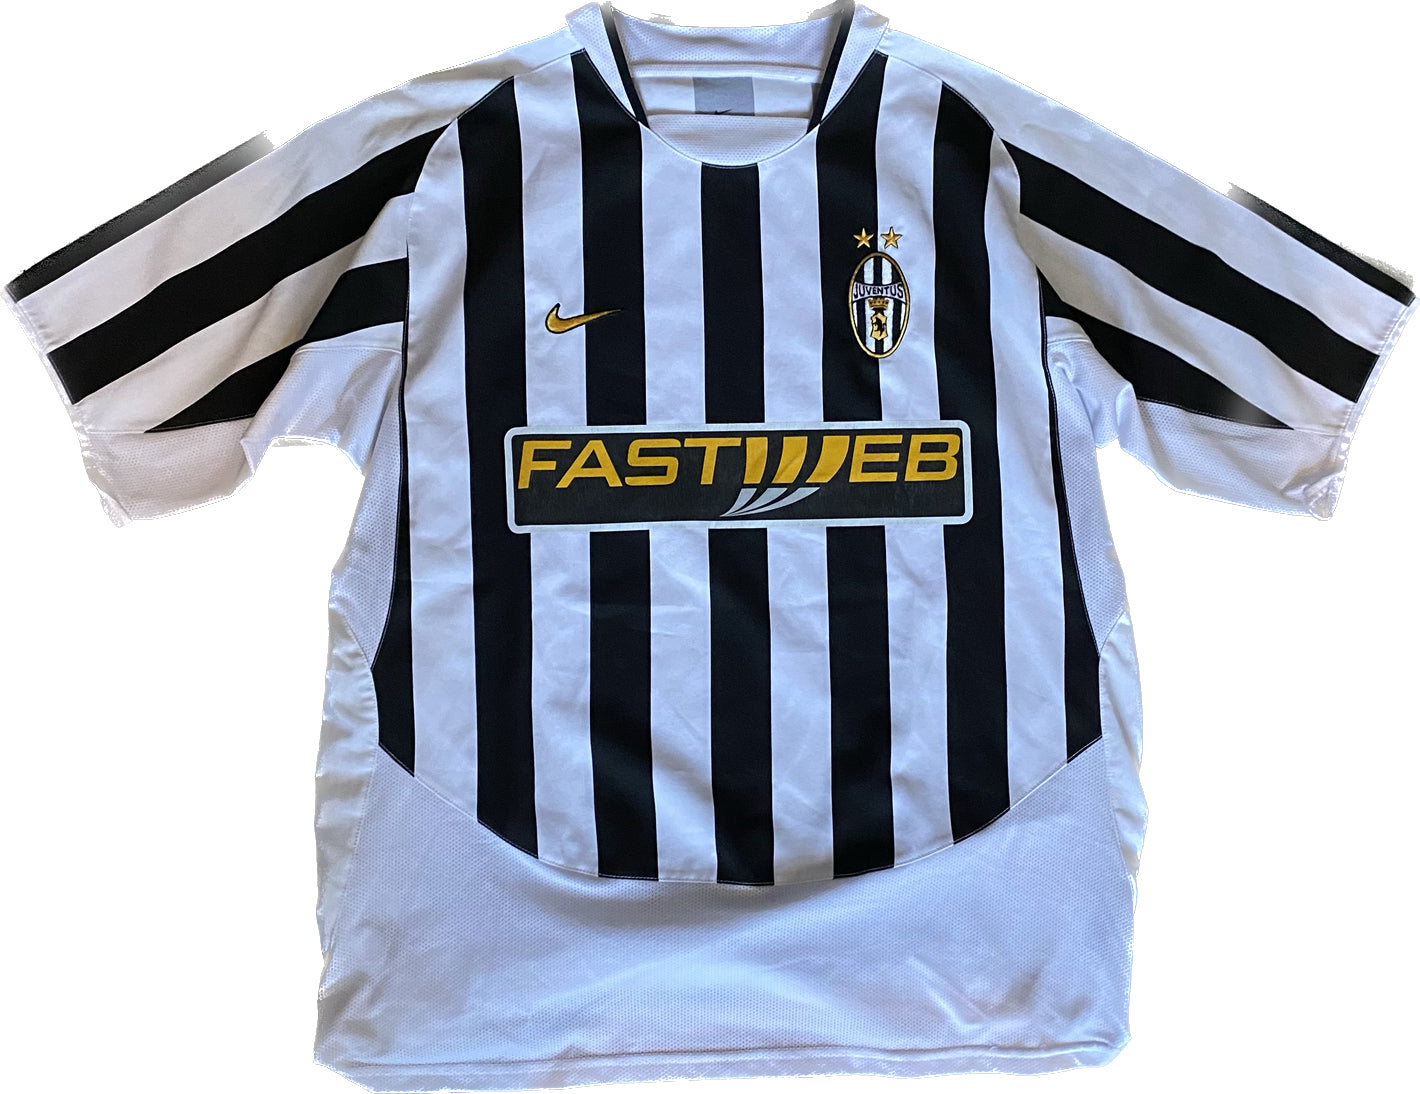 Dekking Il nep Juventus 2003-2004 home shirt – Vintagefootplug